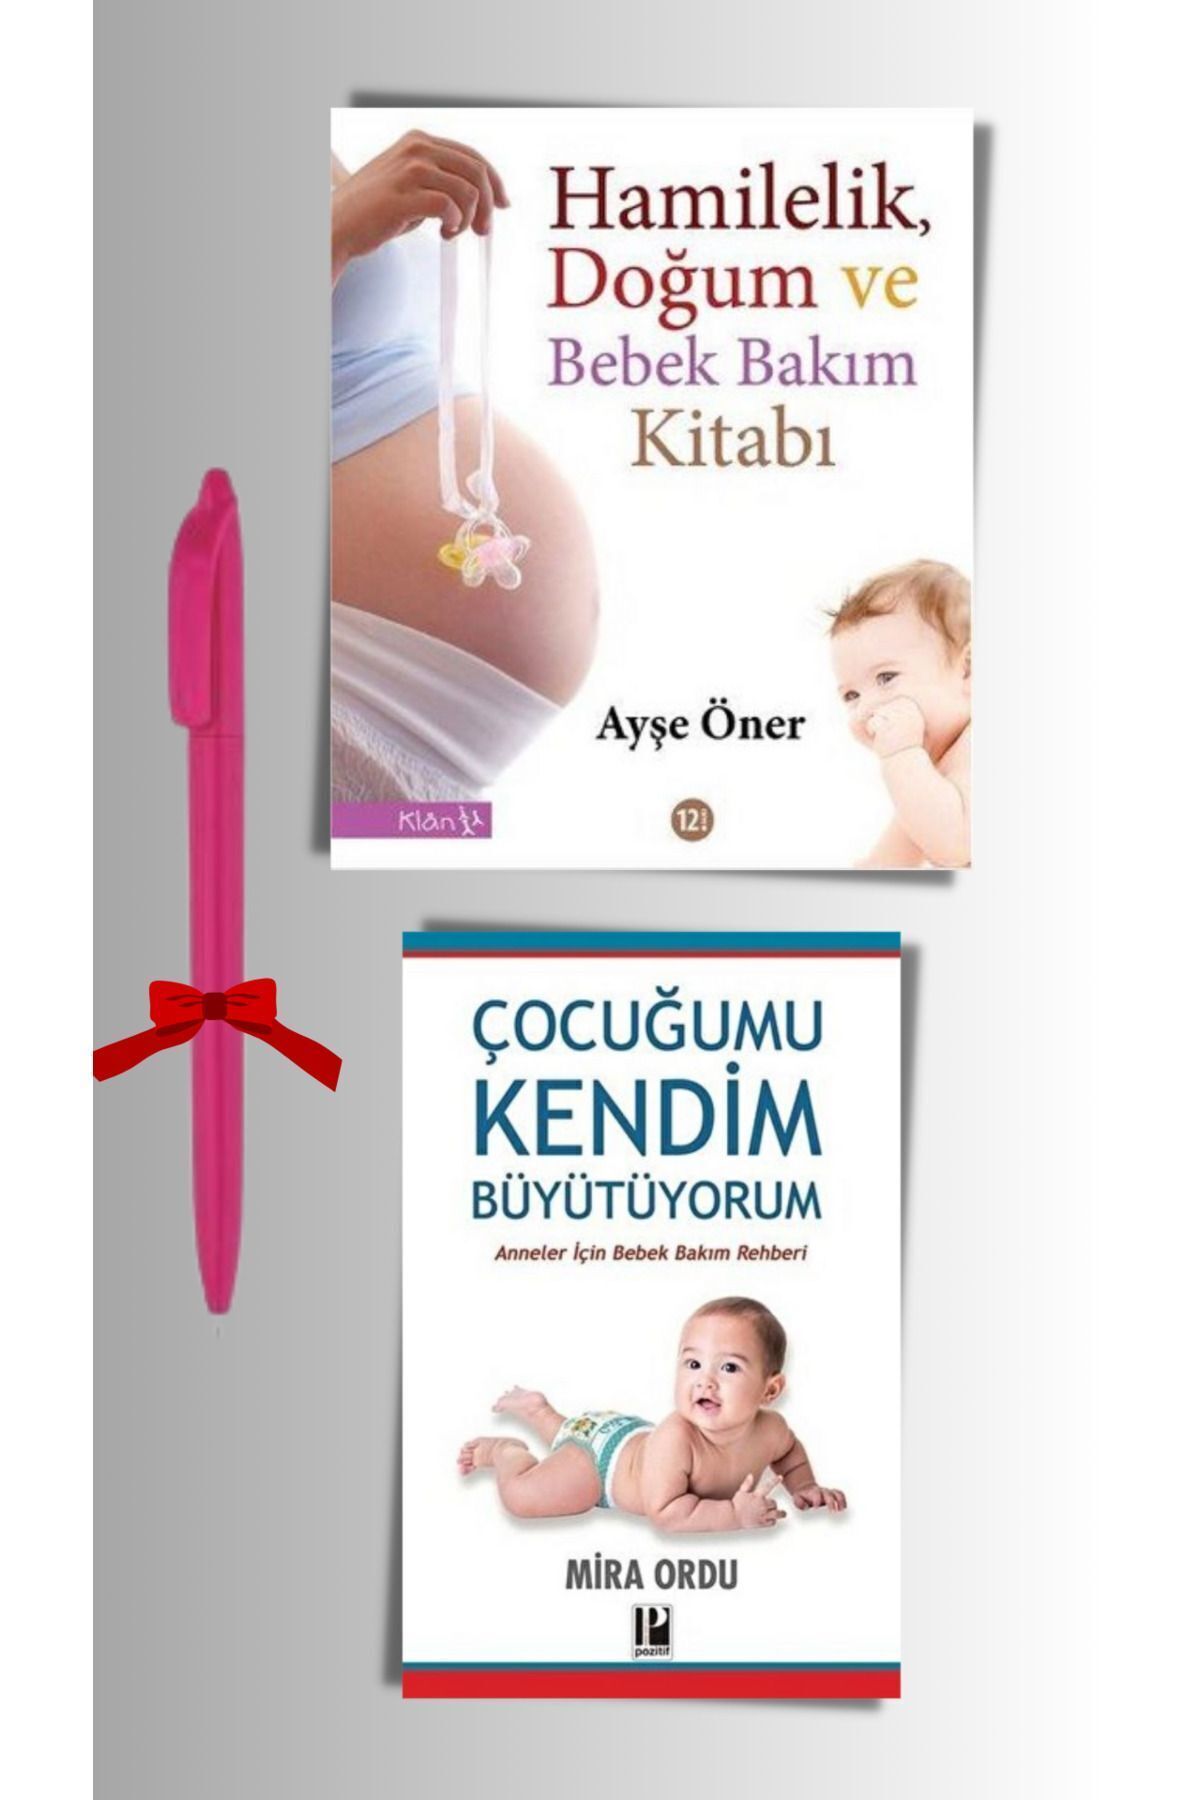 Klan Yayınları Kalem Hediyeli Hamilelik Seti 3 (2 Kitap) Ayşe Öner, Hamilelik, Annelik Klan Yayınları